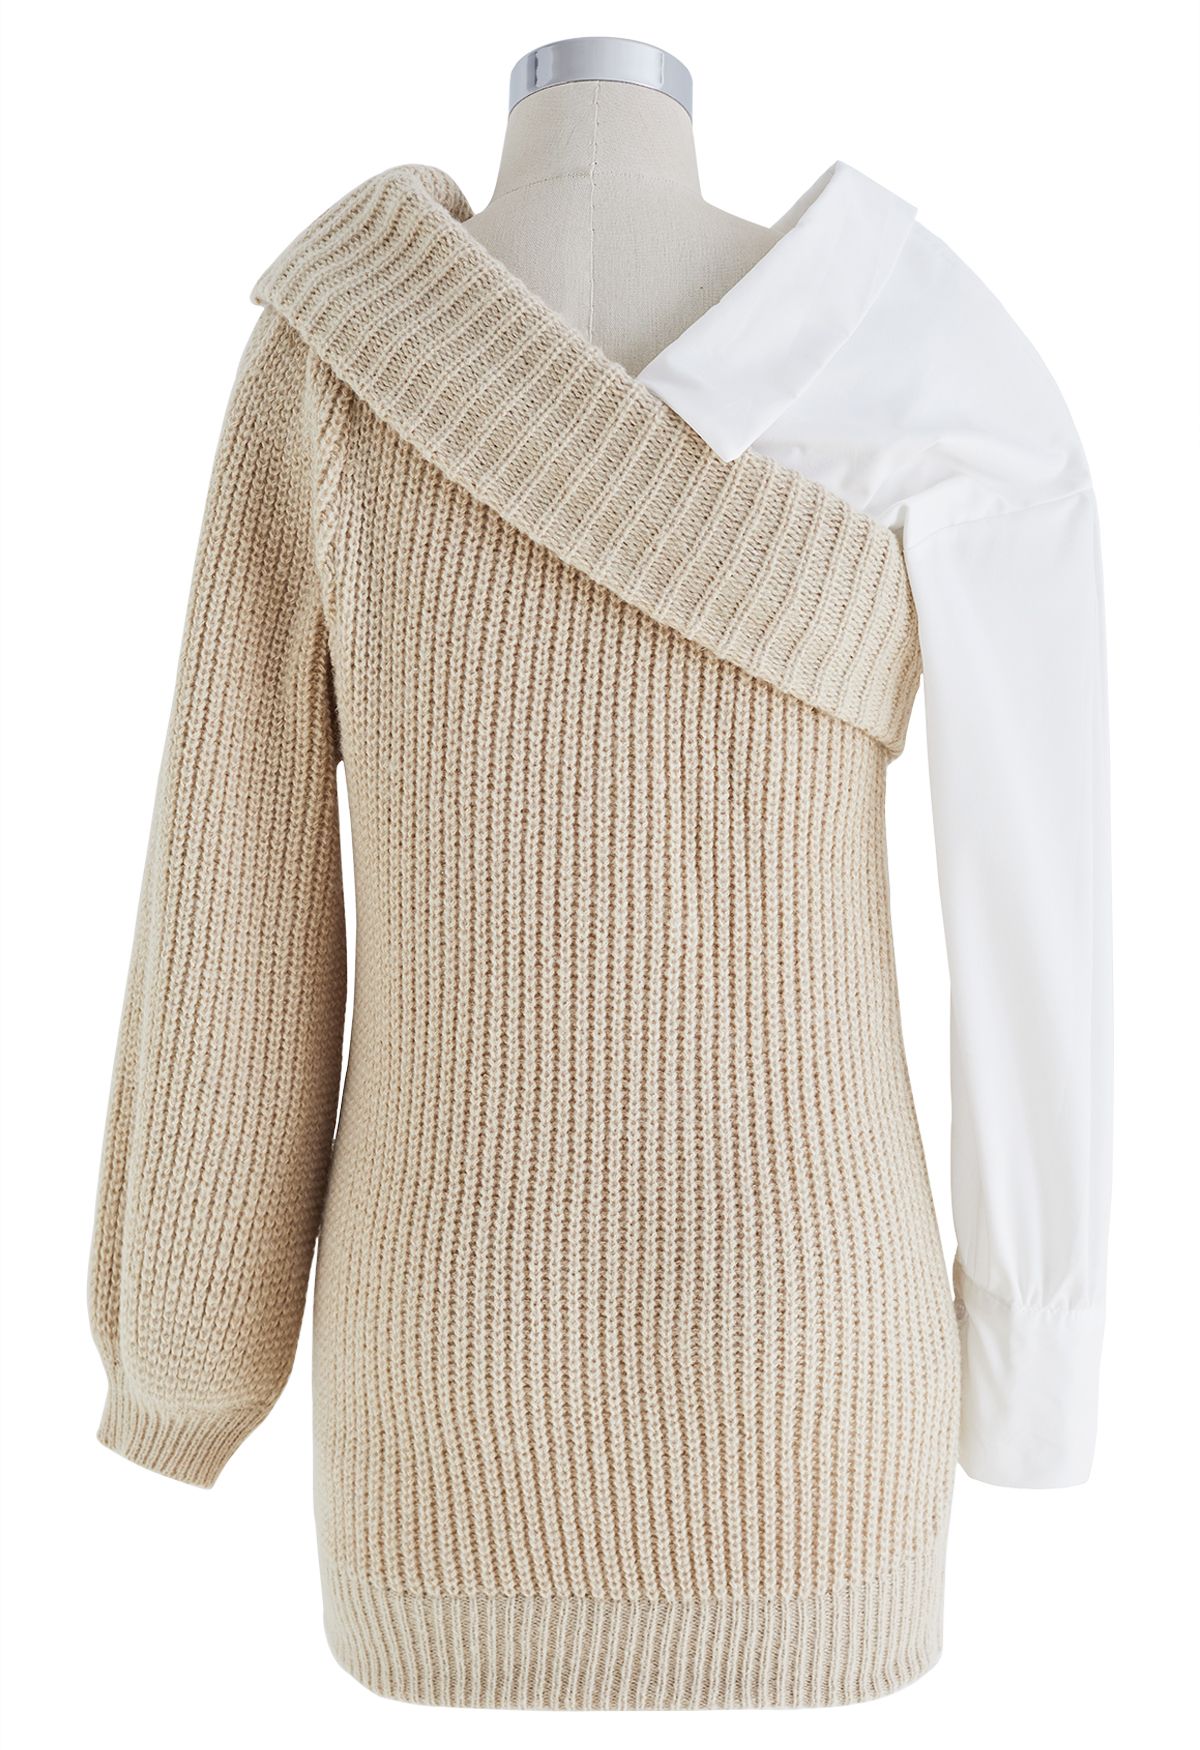 Maglione in maglia a costine con spalle ripiegate color cammello